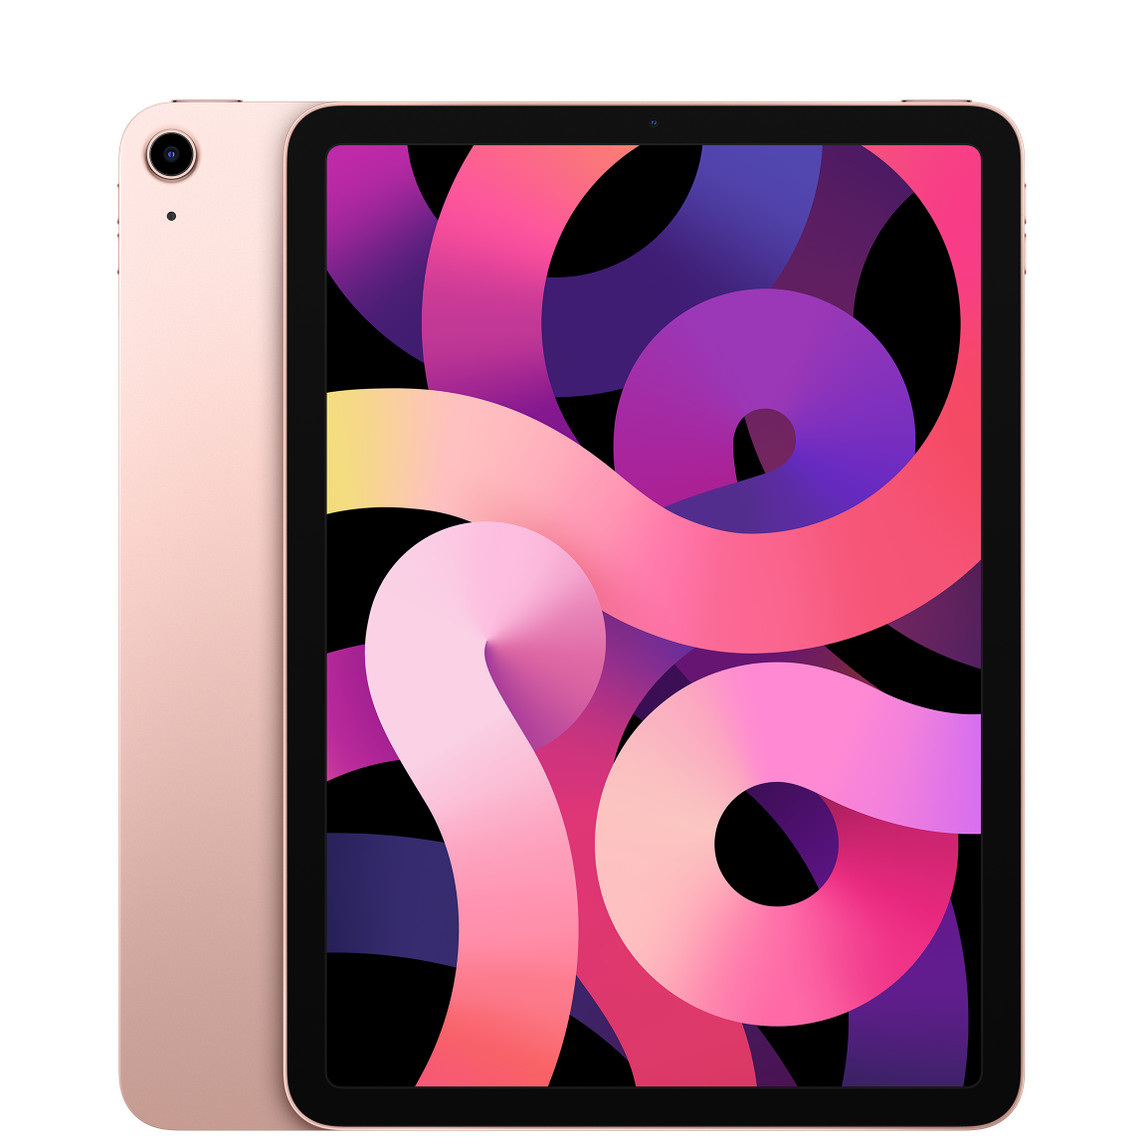 Achteraanzicht van iPad Air in de kleur roségoud, met camera met één lens, vooraanzicht met all-screendesign en zwarte rand rondom het display